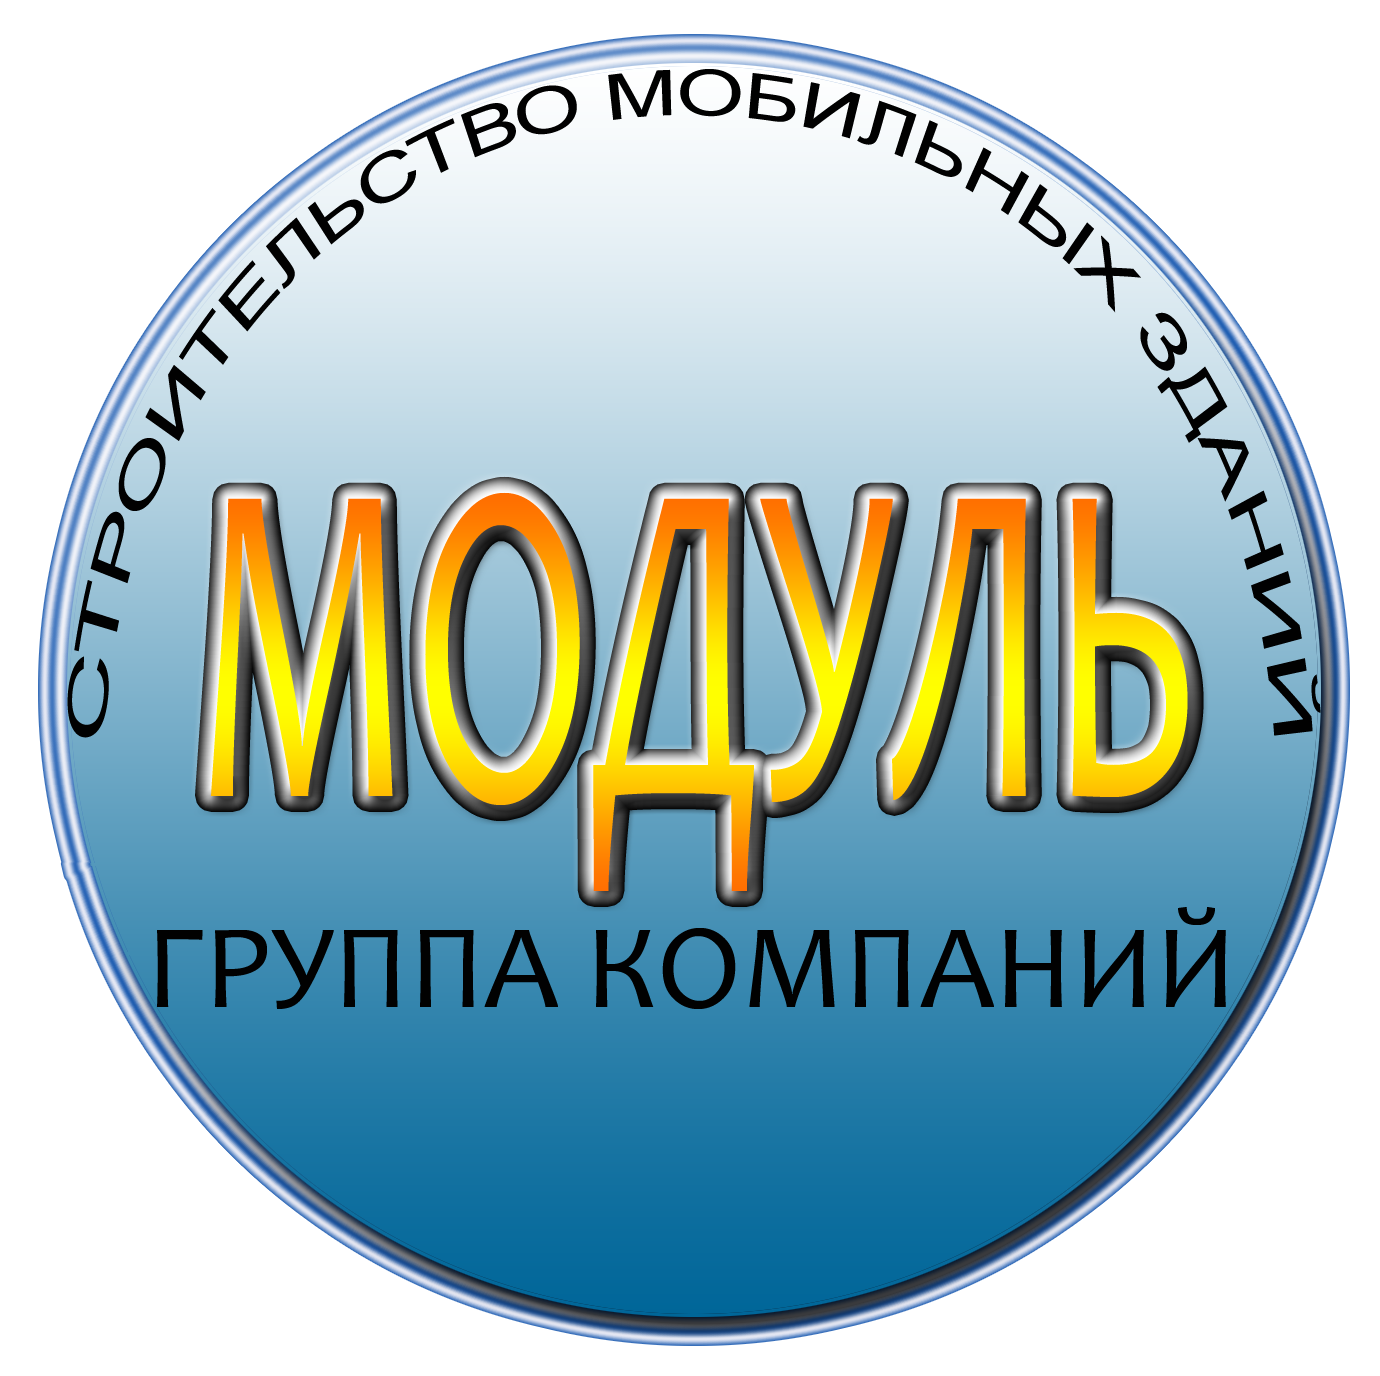 Ооо модуль сайт. Модуль группа компаний. Логотип компании модуль. Компания модуль лого Москва. Логотип ПРОФСТРОЙ.